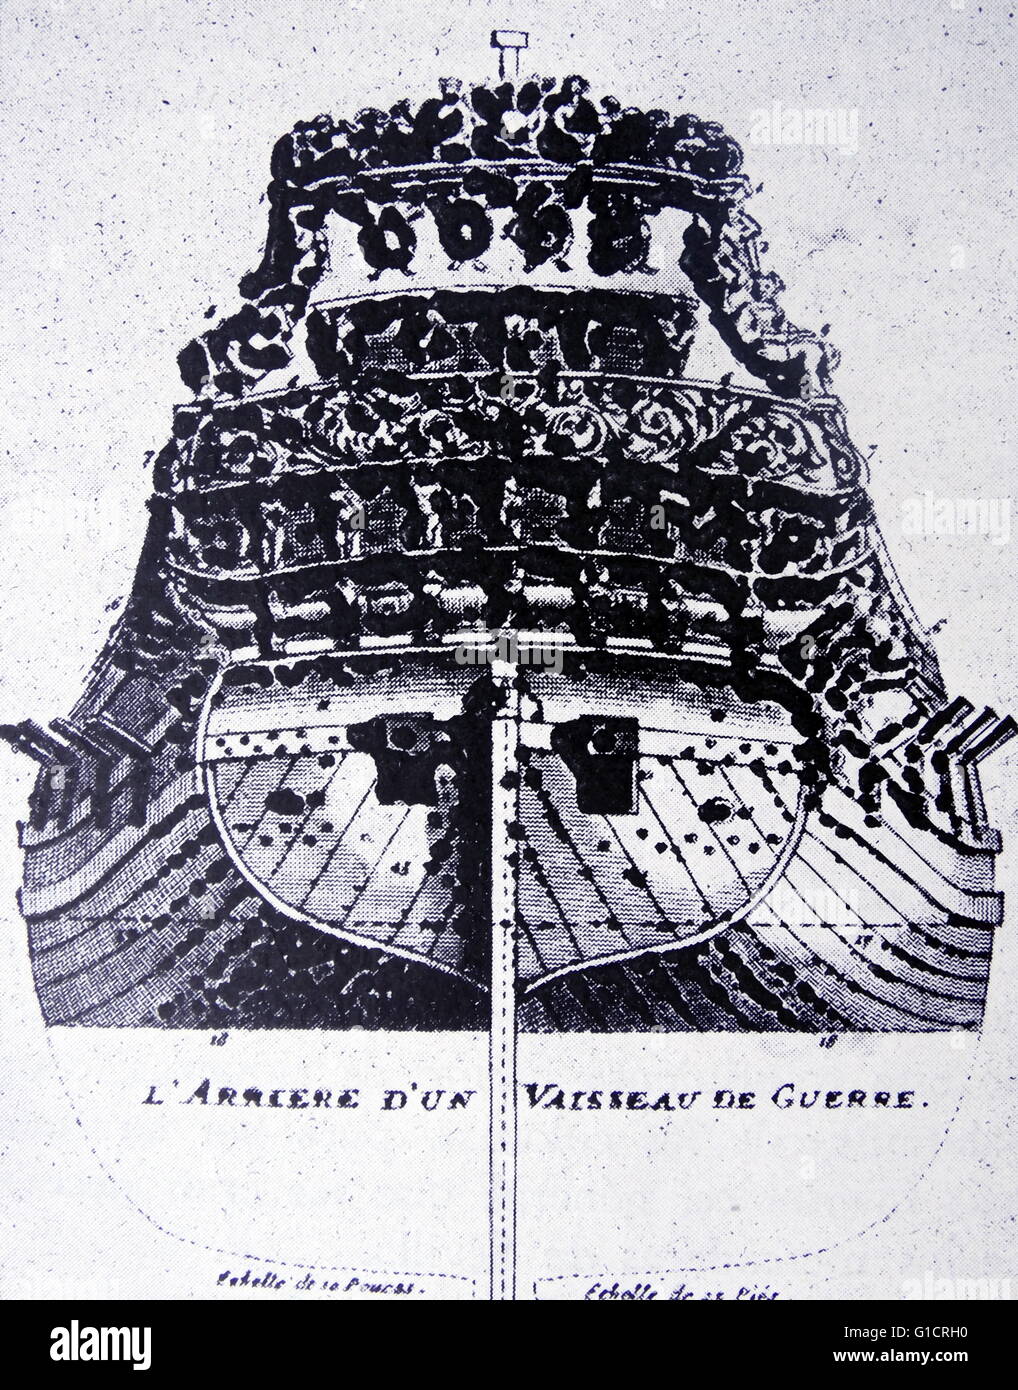 Illustration de la poupe d'un navire de la marine espagnole. 17e siècle Banque D'Images